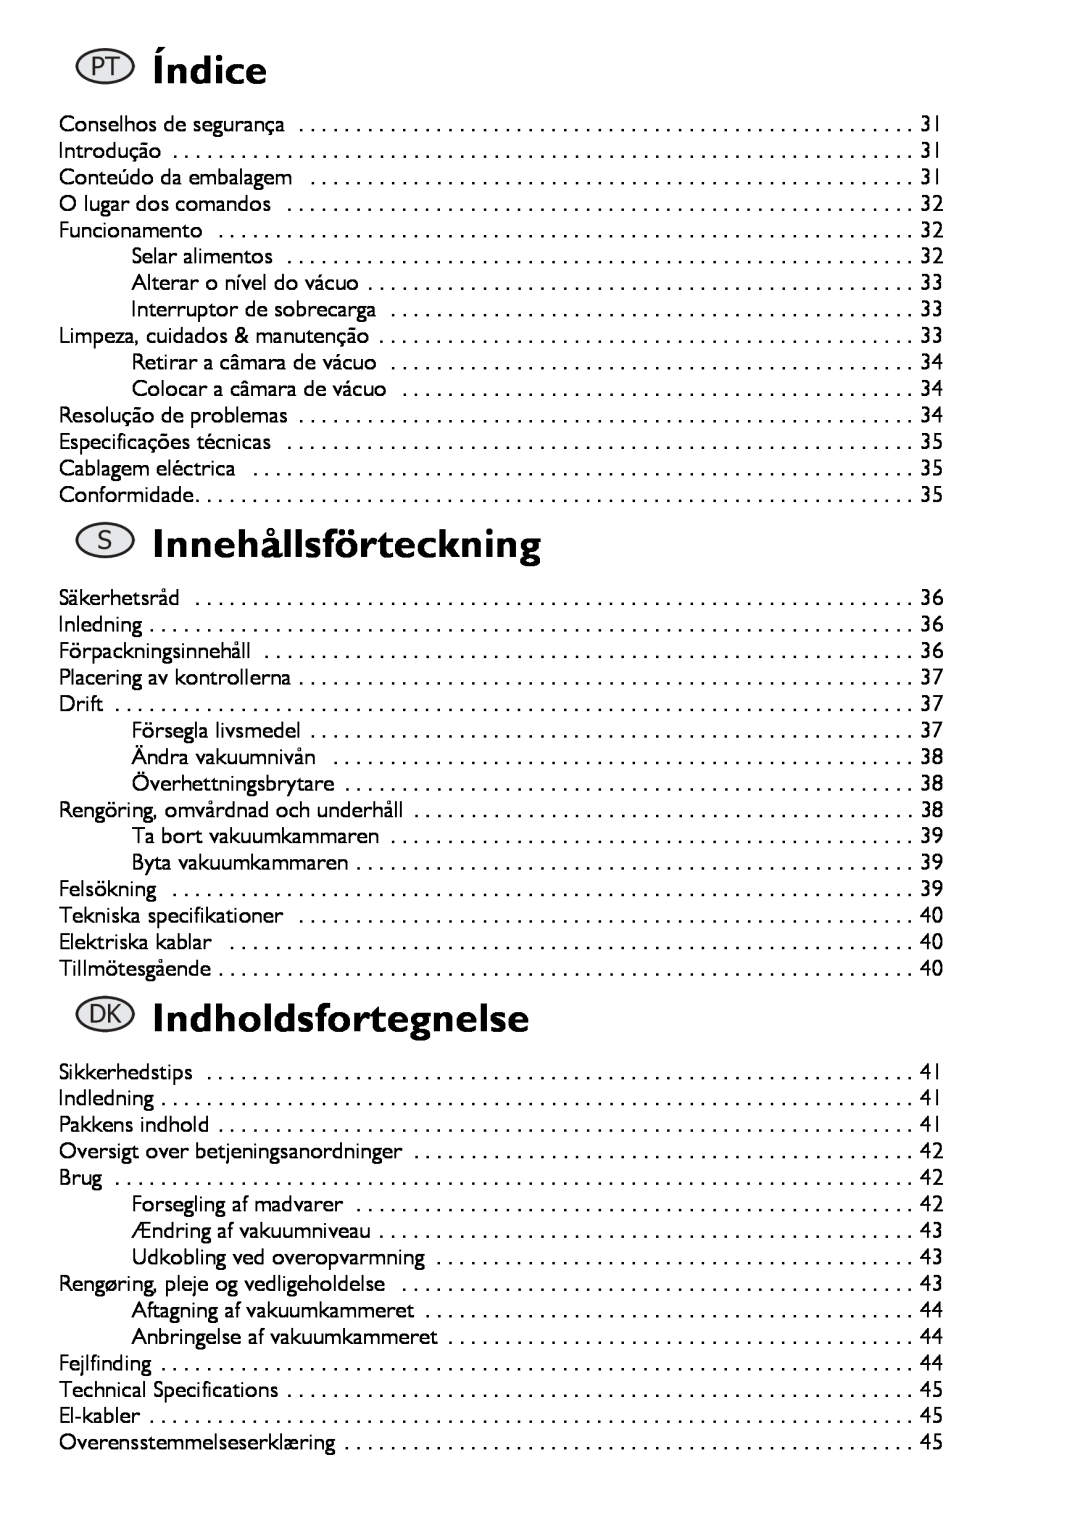 Buffalo Tools S097 instruction manual PT Índice, SInnehållsförteckning, DK Indholdsfortegnelse 